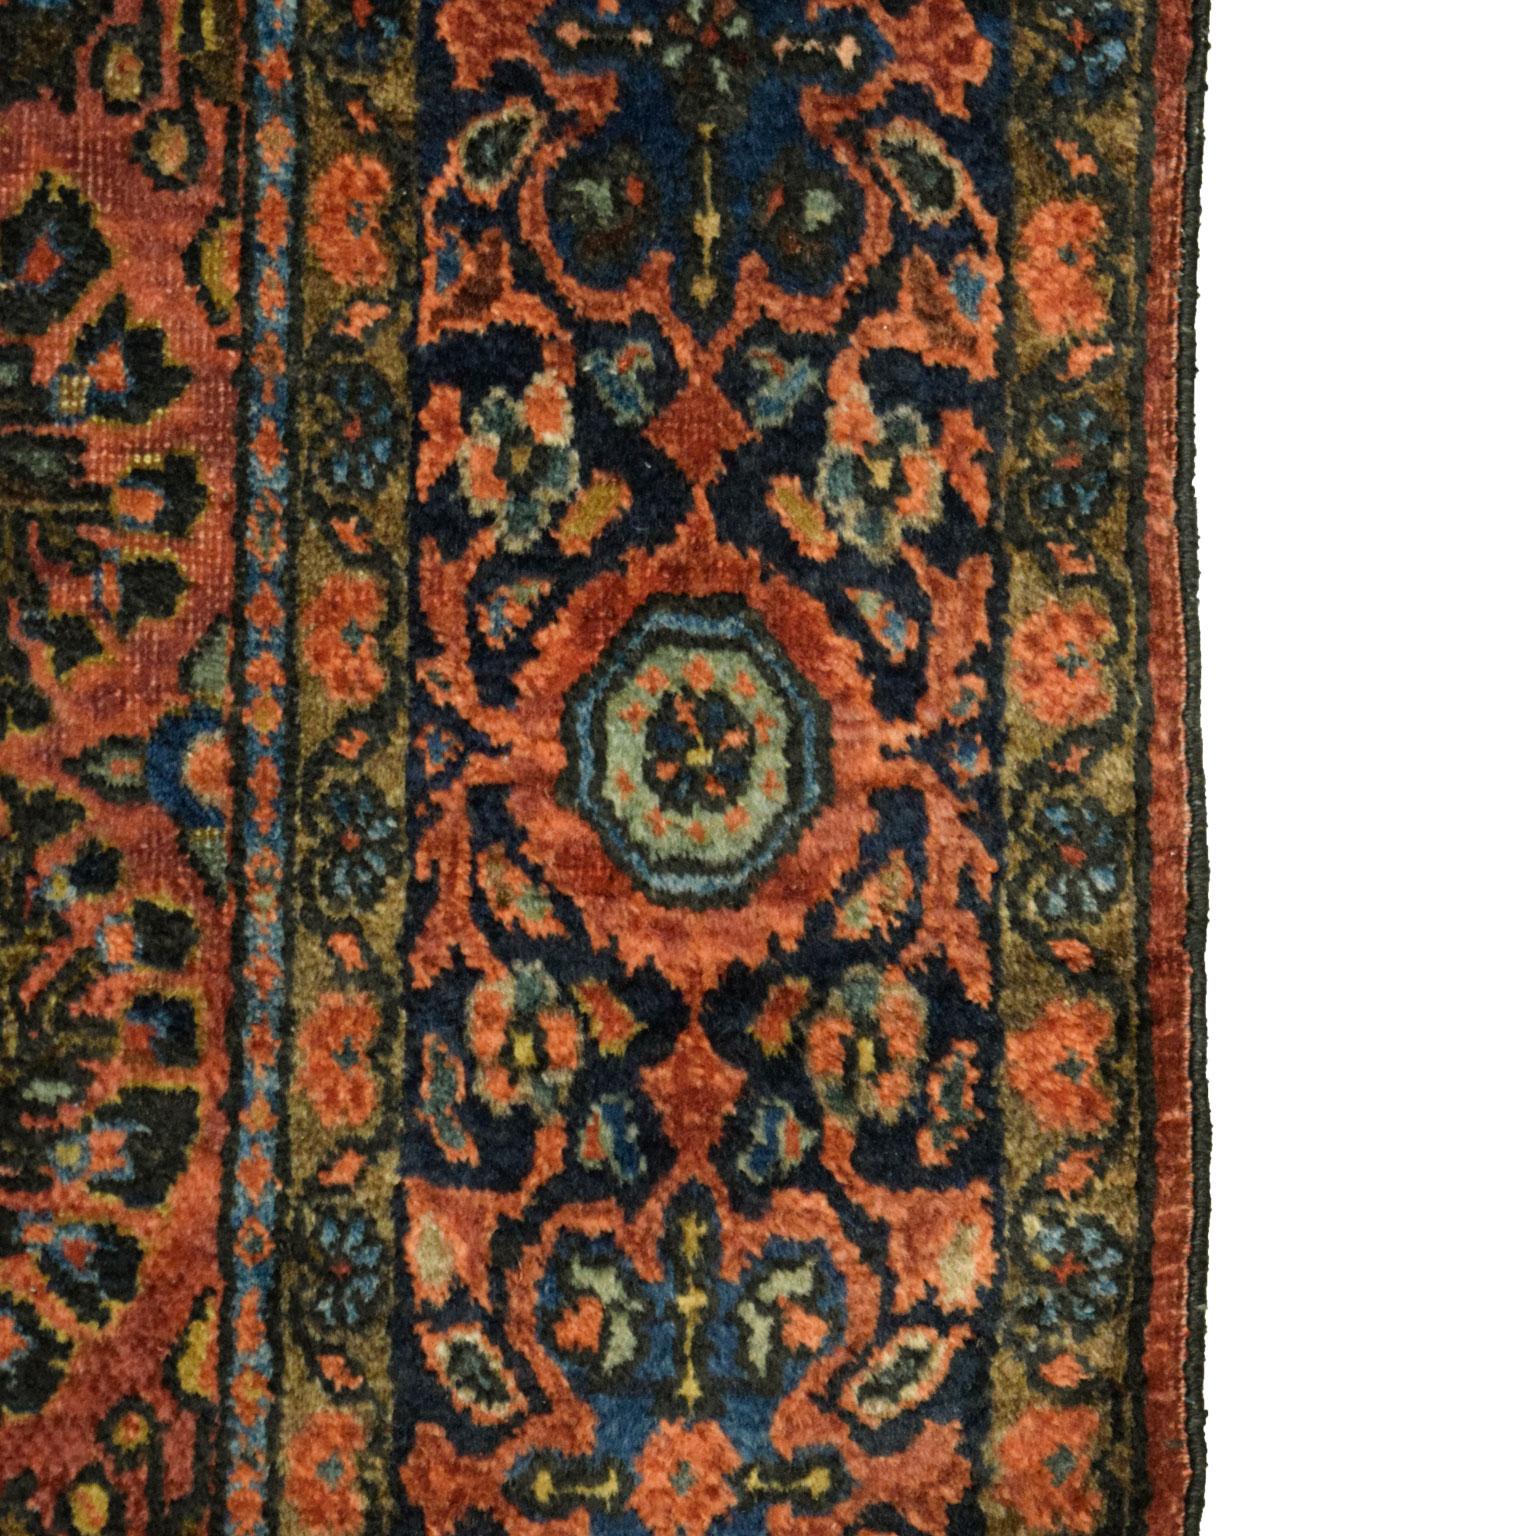 Antique 1910s Persian Sarouk Mohajeran Rug, Peacock Motif, 4x6 For Sale 1